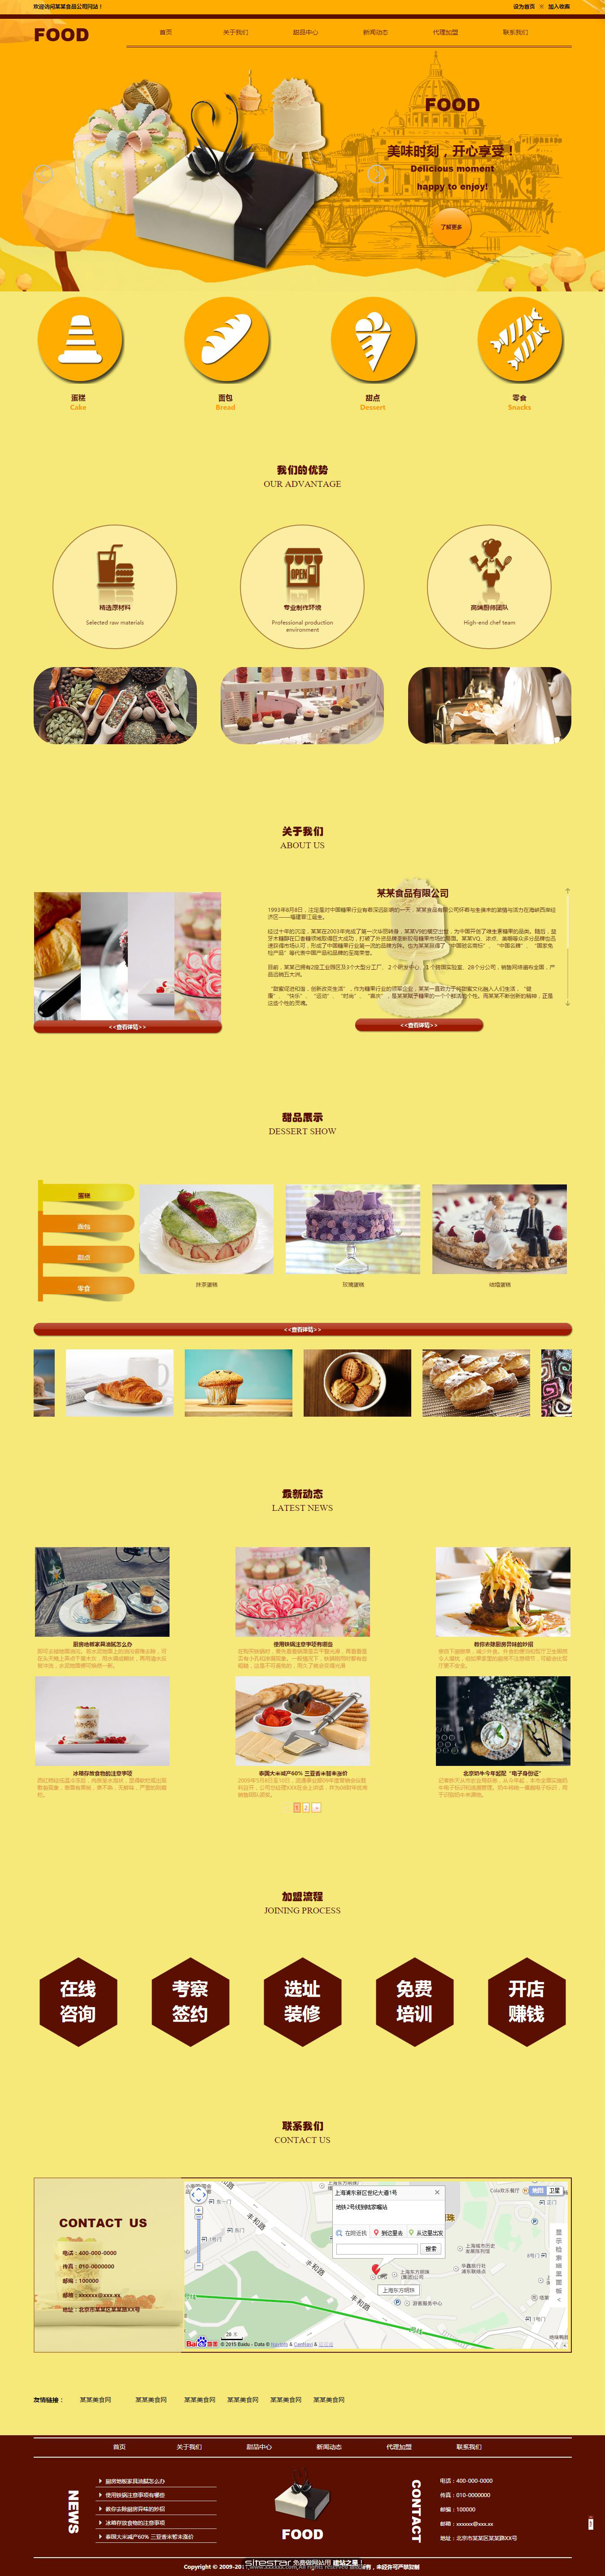 企业网站精美模板-food-78